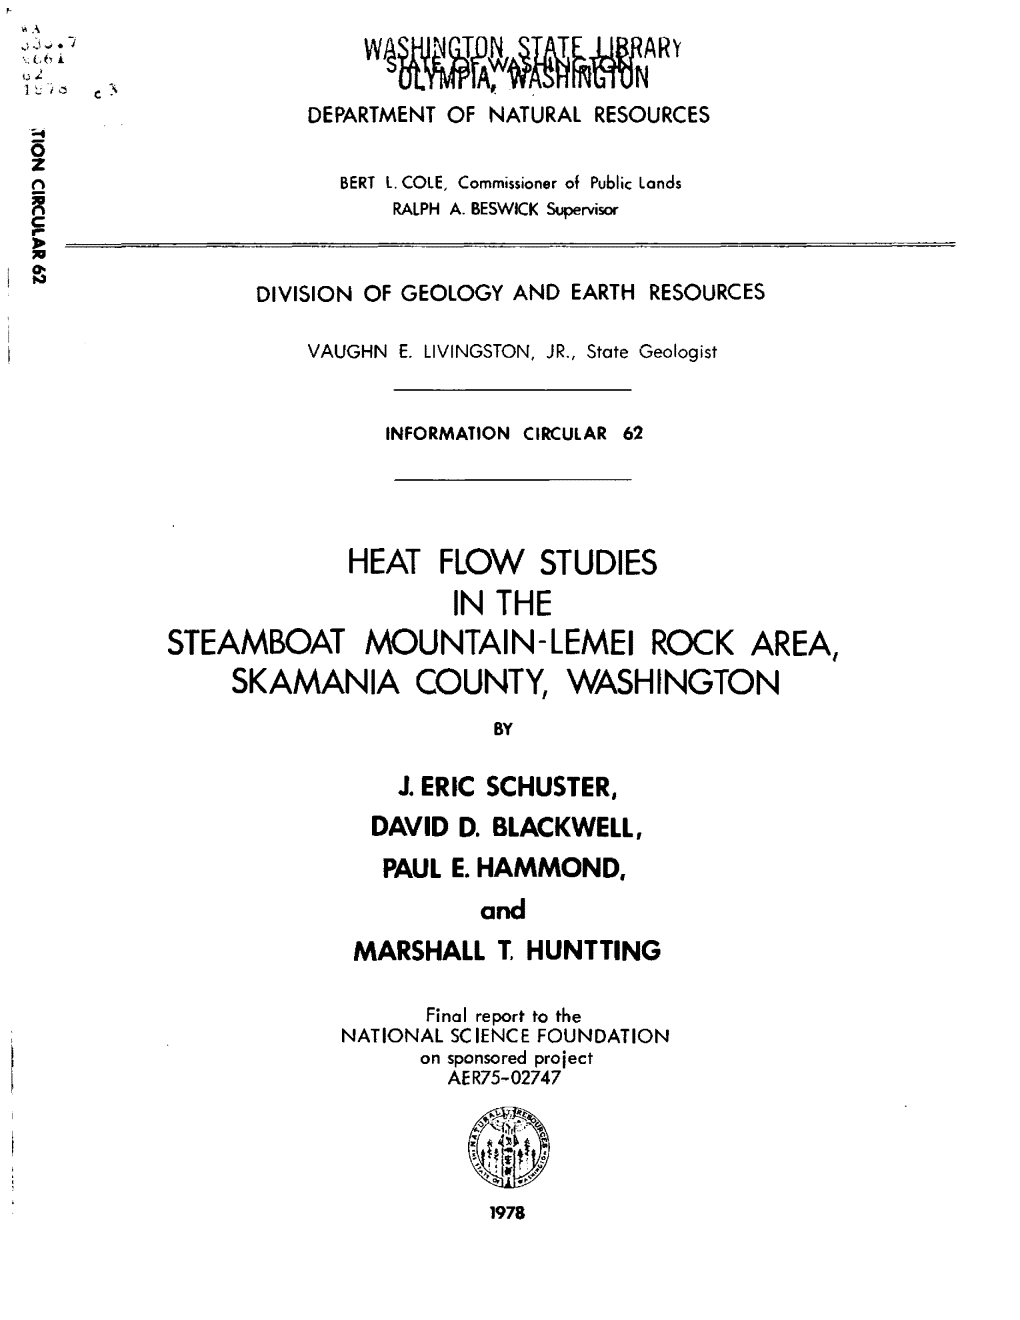 IC-62, Heat Flow Studies in the Steamboat Mountain-Lemei Rock